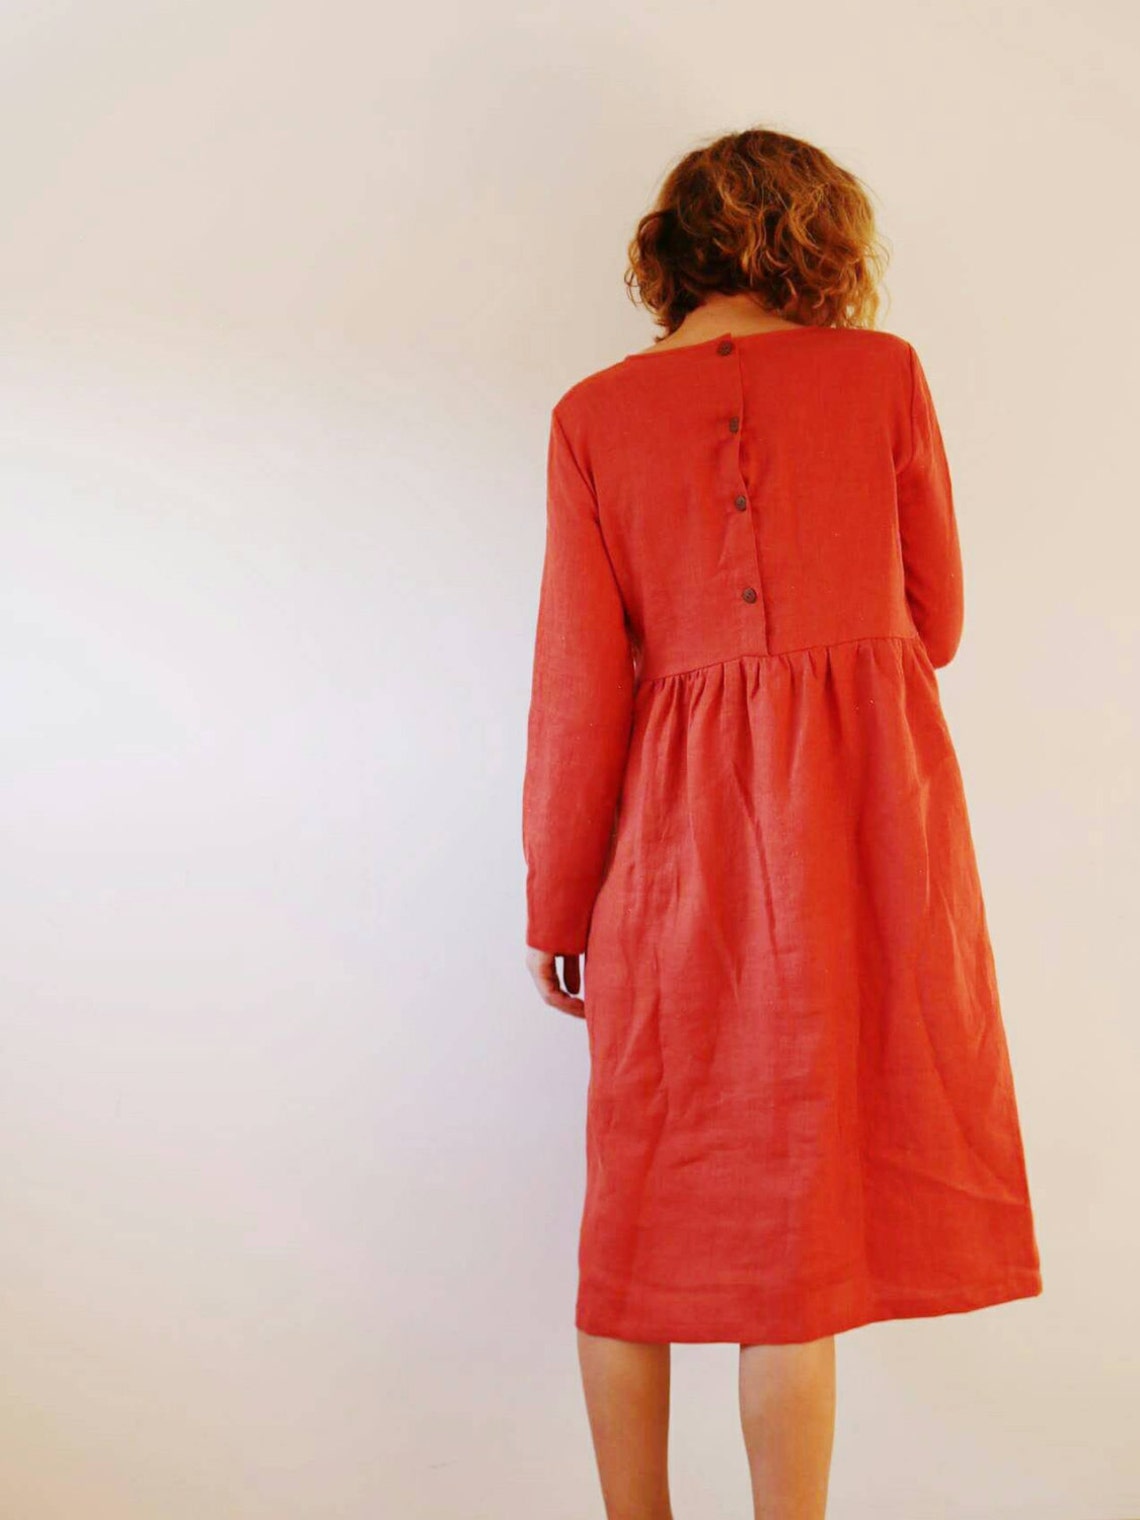 Linen Dress Burnt Orange Linen Dress Long Sleeved Dress | Etsy